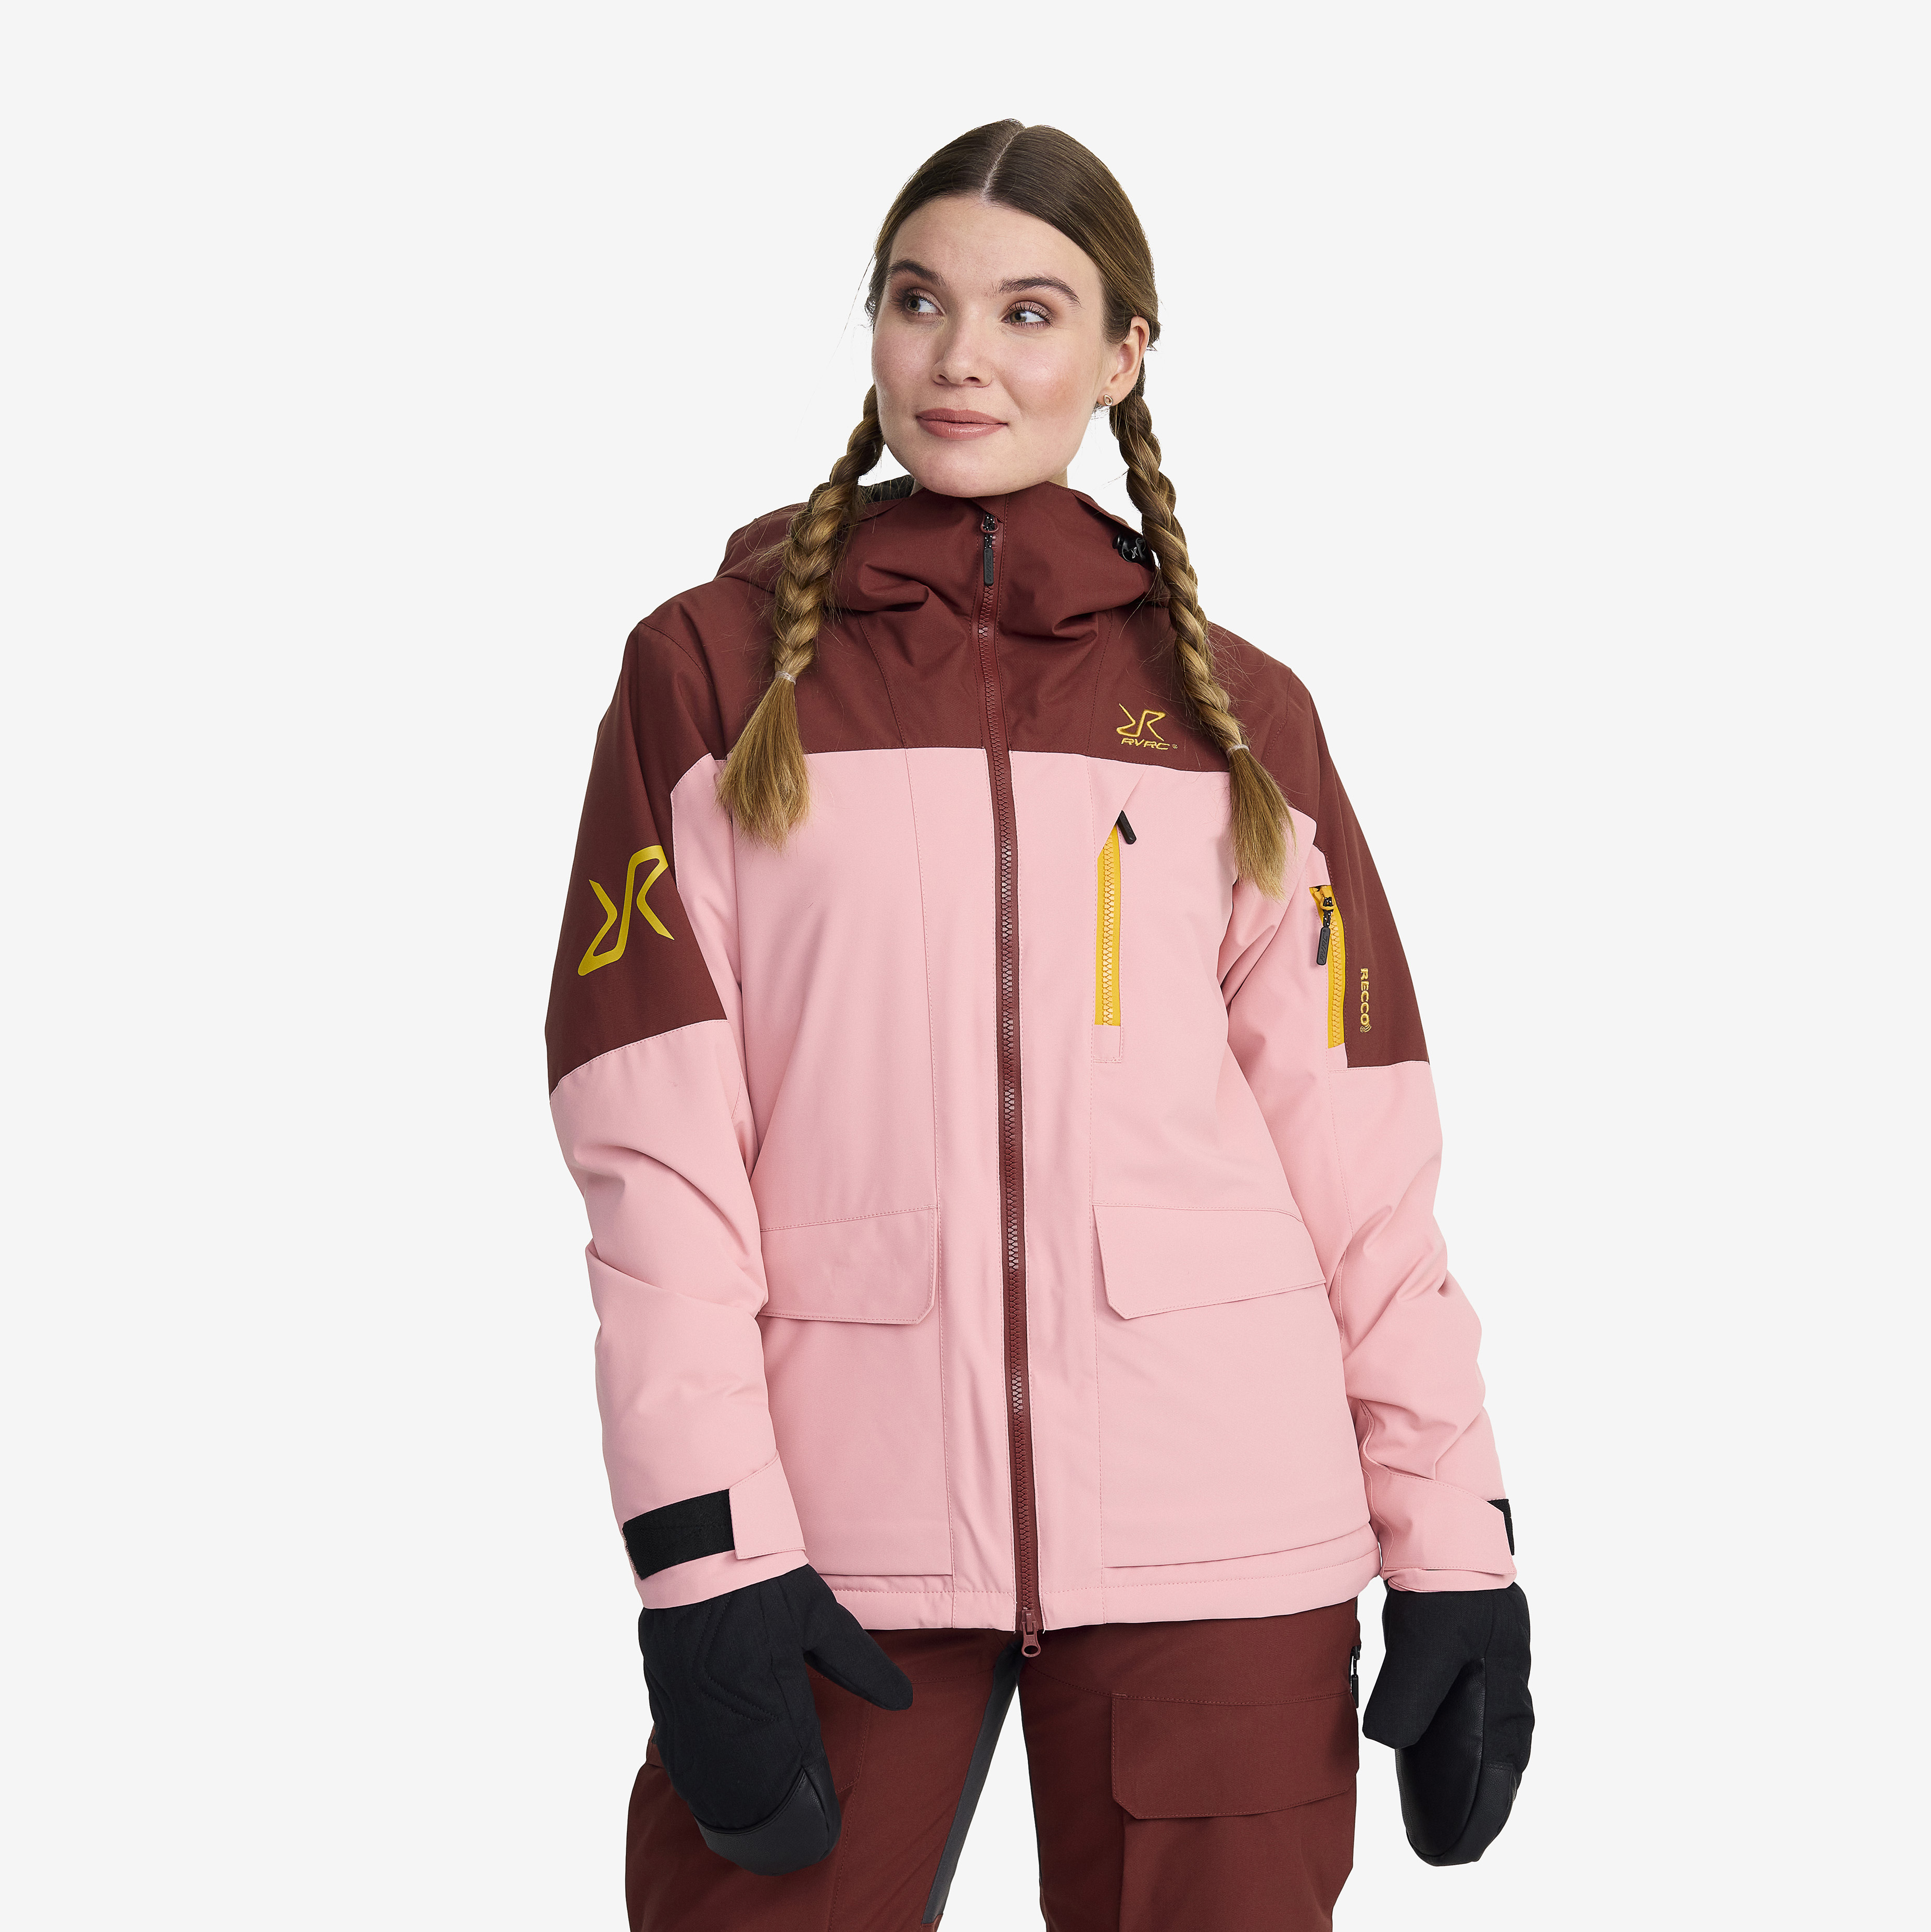 Halo 2L Insulated Ski Jacket Blush Damen